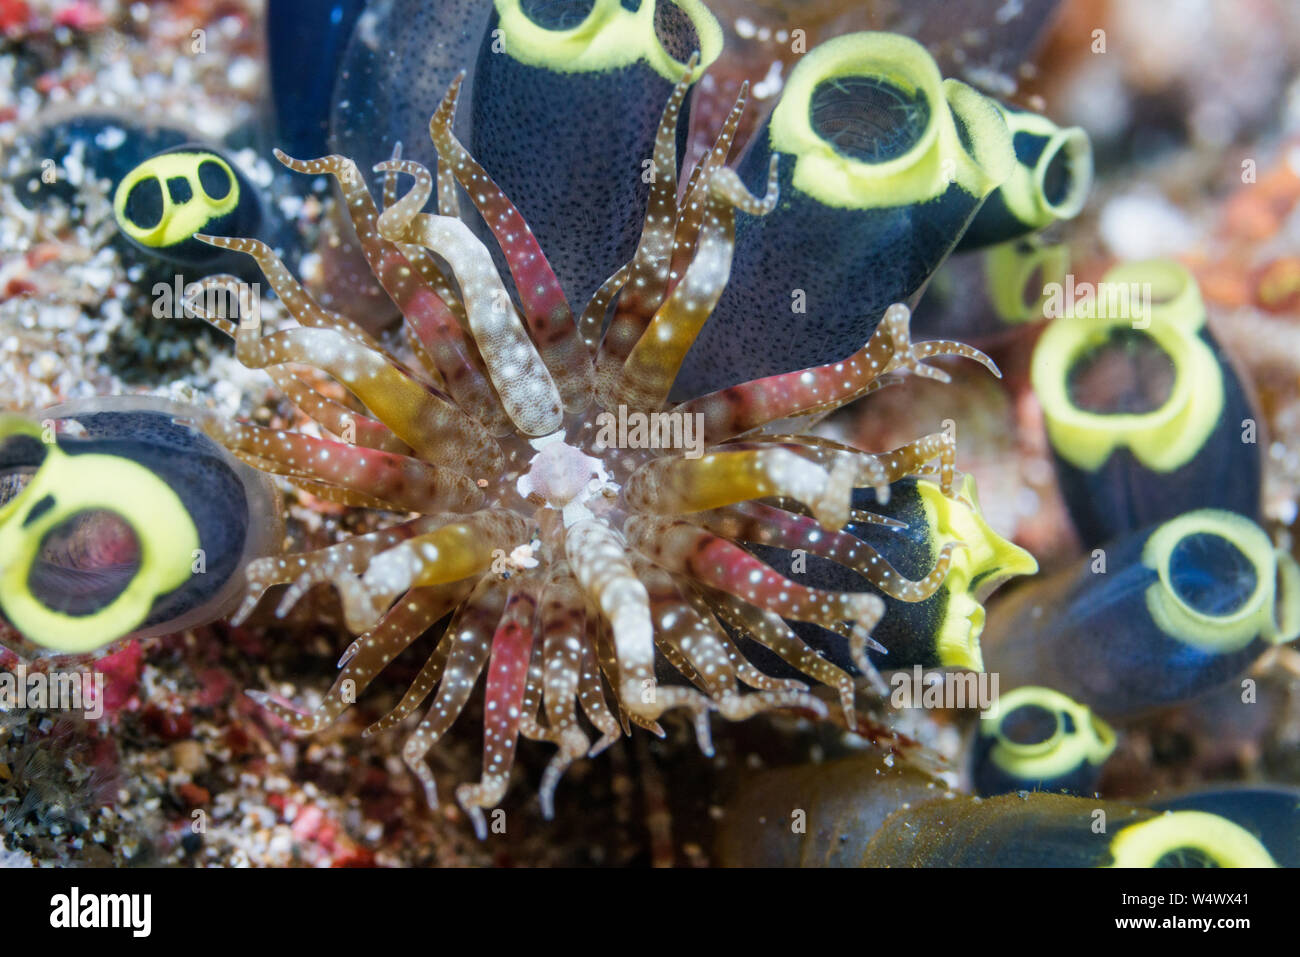 Schwimmen Anemone [Boloceroides mcmurrichi] und Stolzierte Ascidian [Clavelina robusta]. Lembeh Strait, Nord Sulawesi, Indonesien. Stockfoto